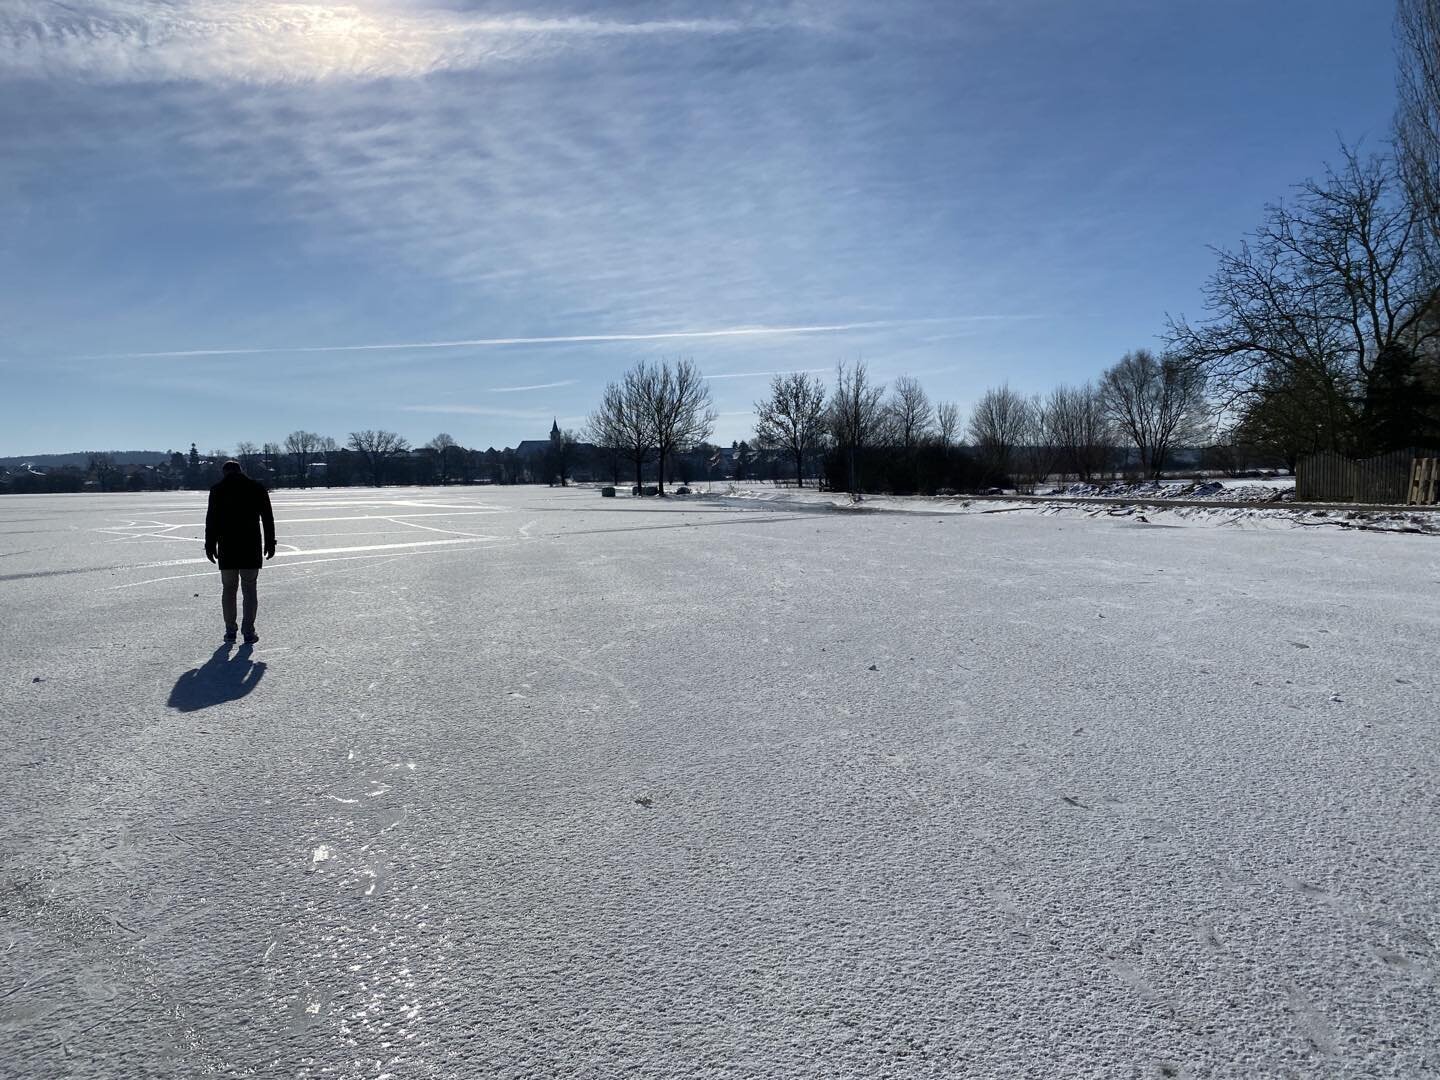 Sonntagsspaziergang auf dem Eis ❤️☀️❄️ #sonntag #alteheimat #wintersonne #wetterau #altenstadt #winter #eis #wosindmeineschlittschuh